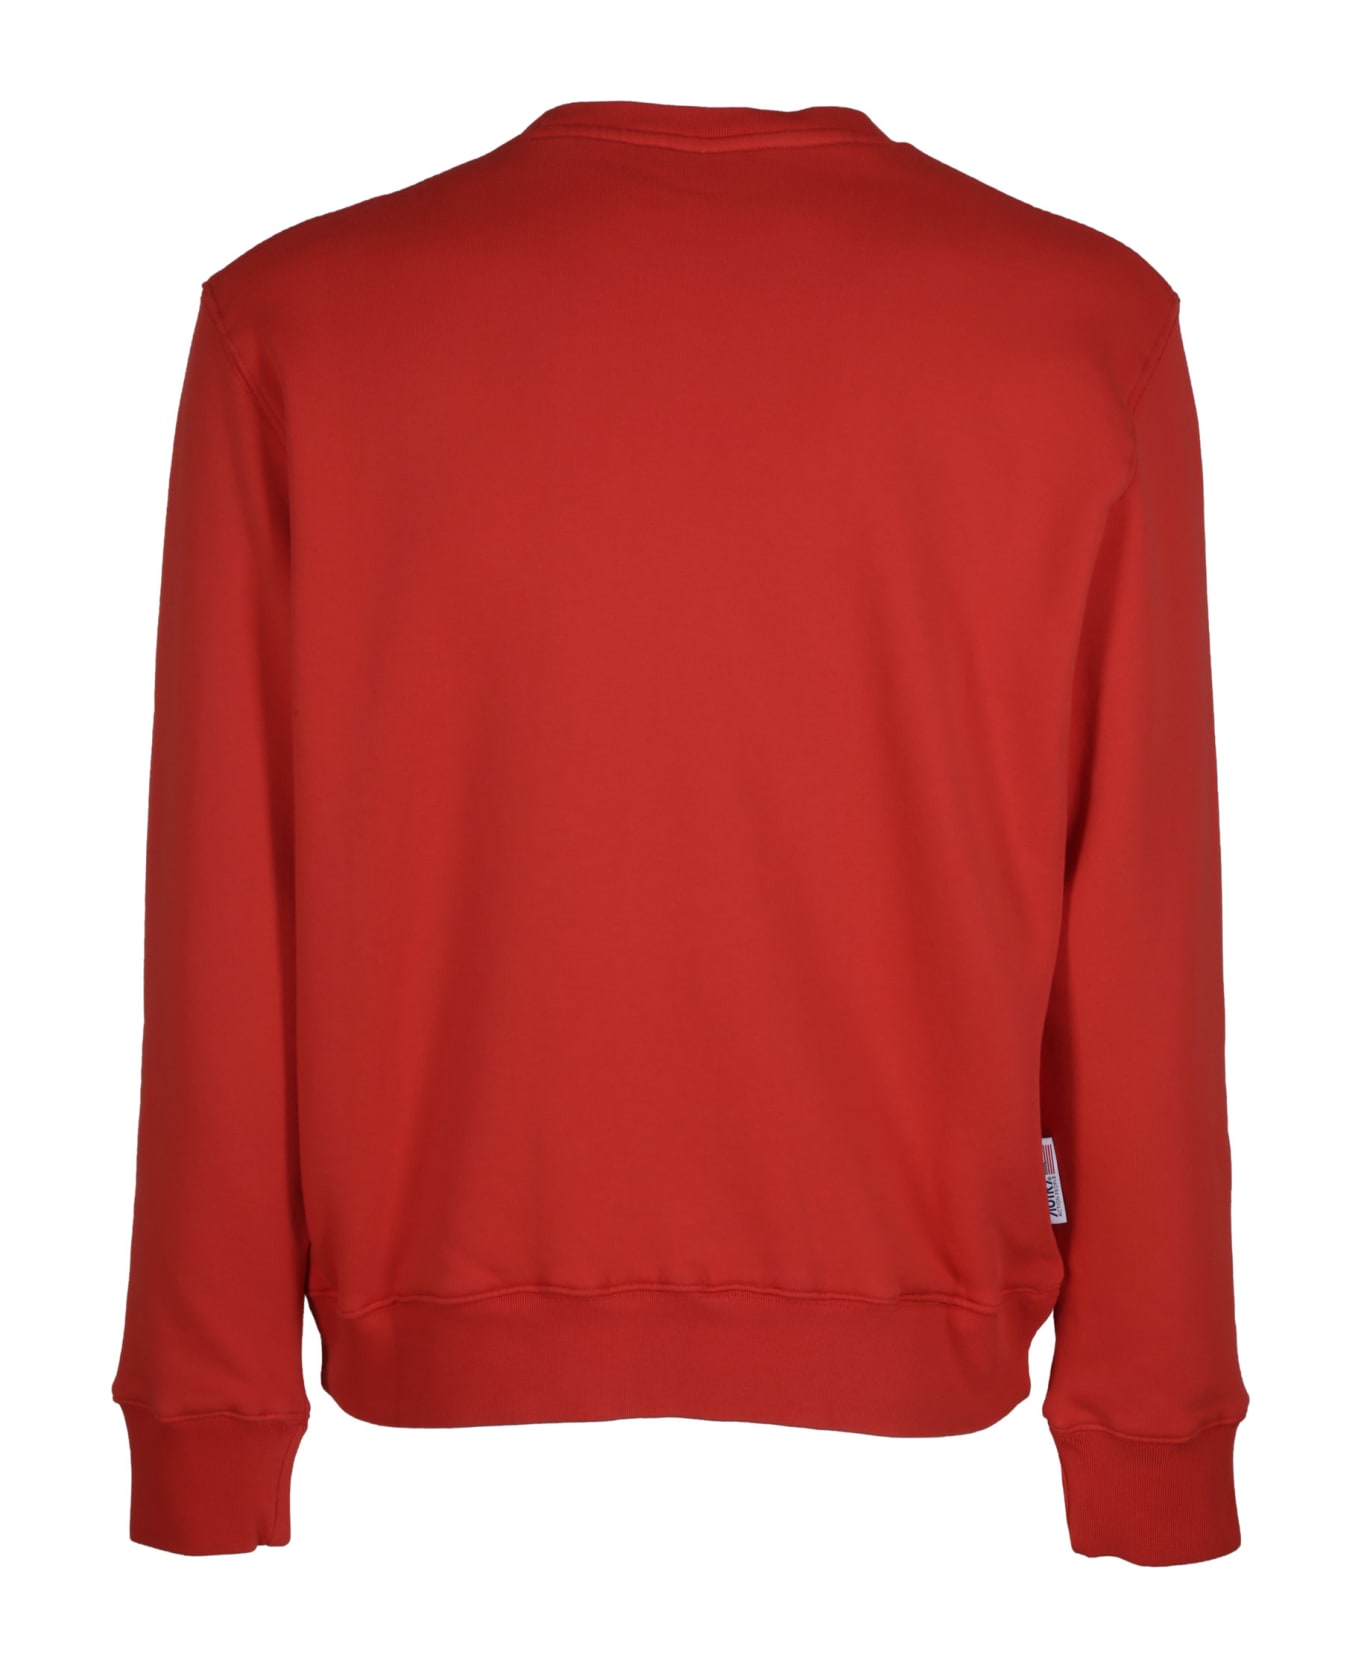 Autry Sweatshirt Iconic Print - Red